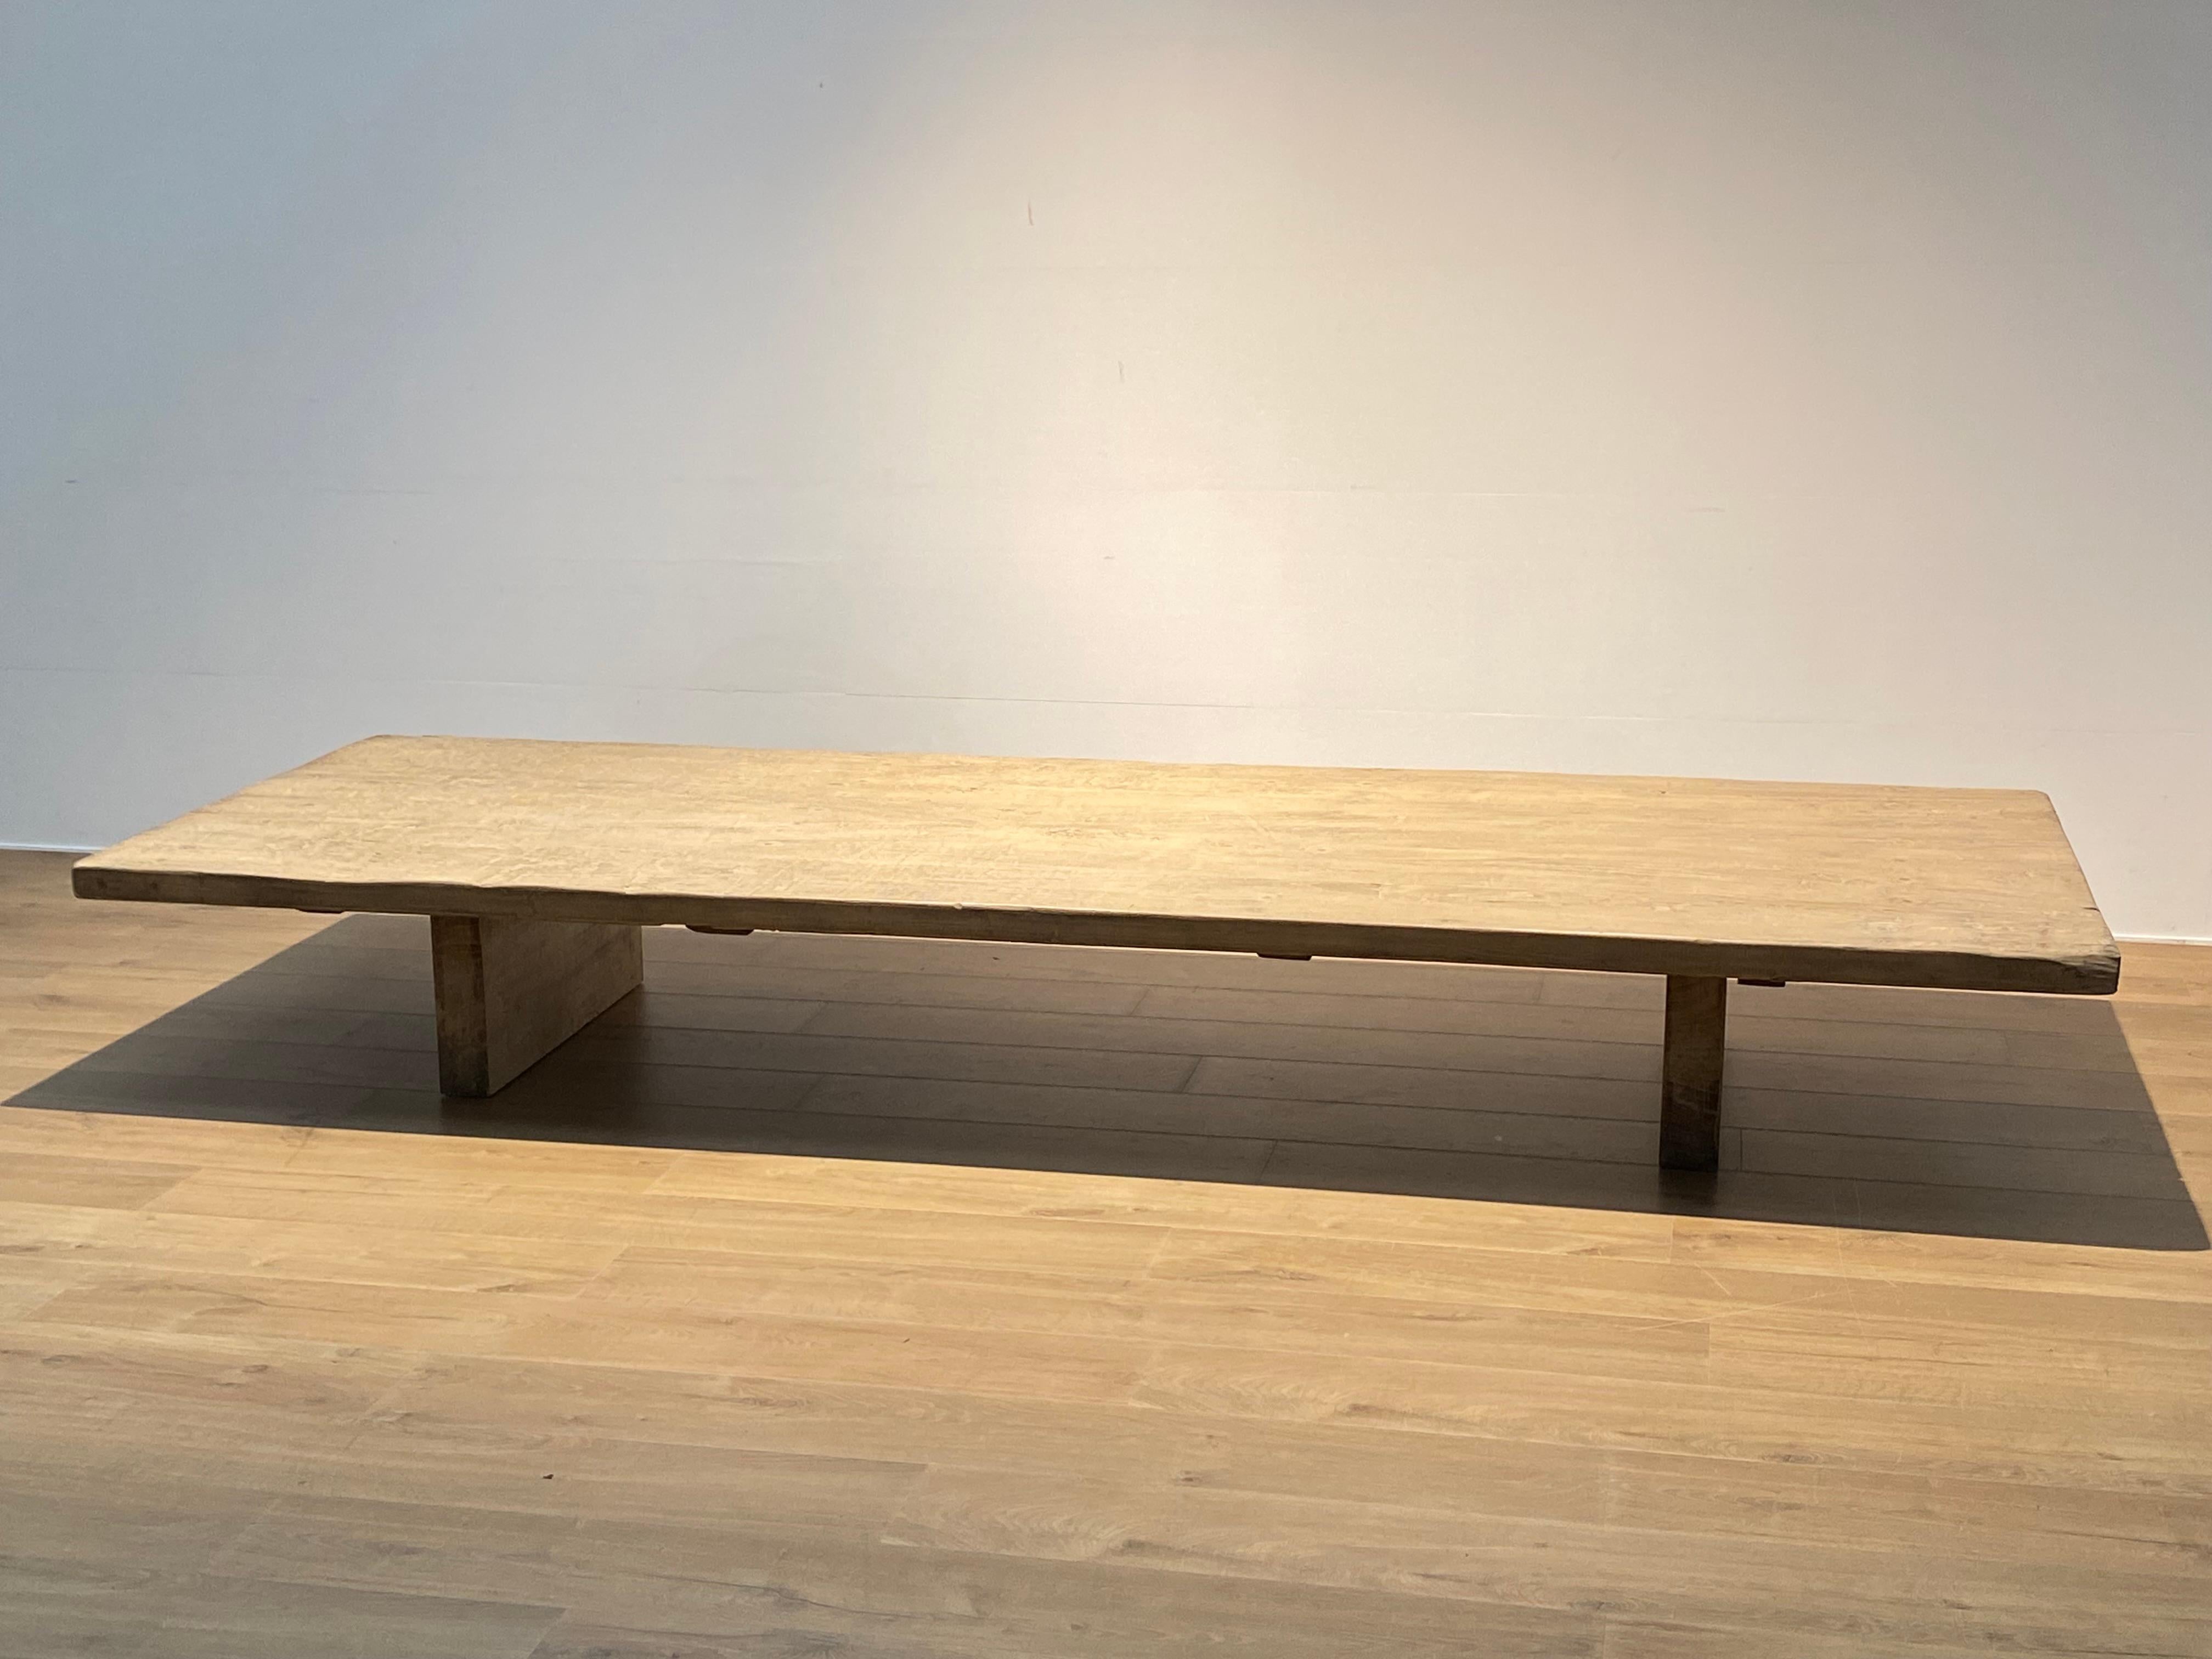 Table ancienne brutaliste en bois d'orme blanchi,
Le plateau de la table est asiatique et date d'environ 1960,
monté sur 2 pieds modernes et contemporains,
grande brillance et patine du bois vieilli